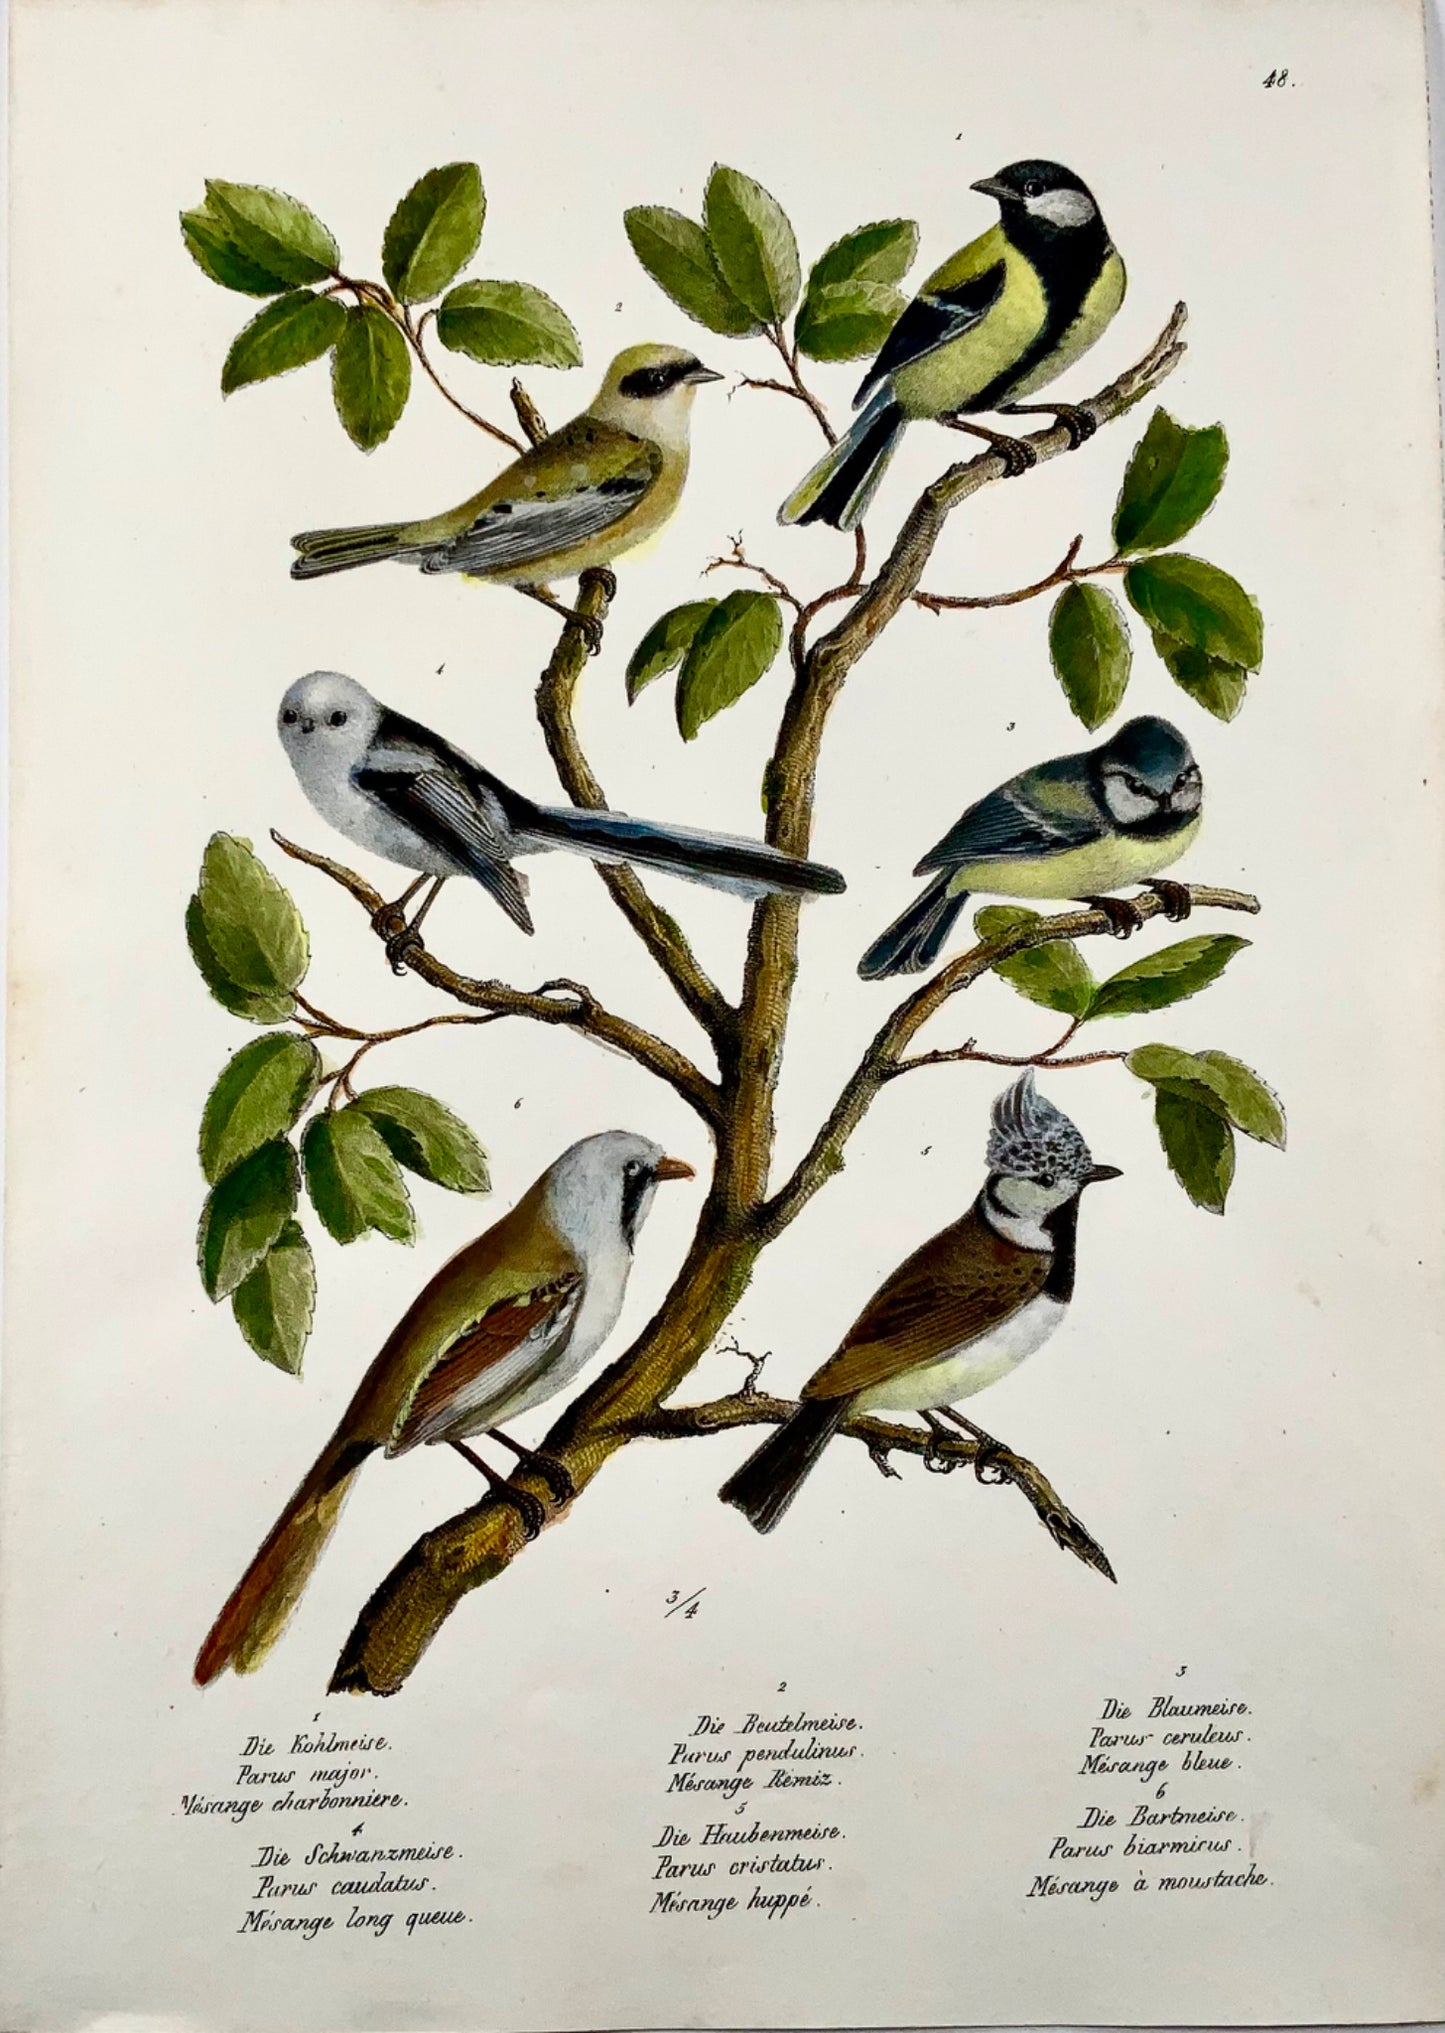 1830 Paridae, mésanges, oiseaux, ornithologie Brodtmann lithographie folio colorée à la main 